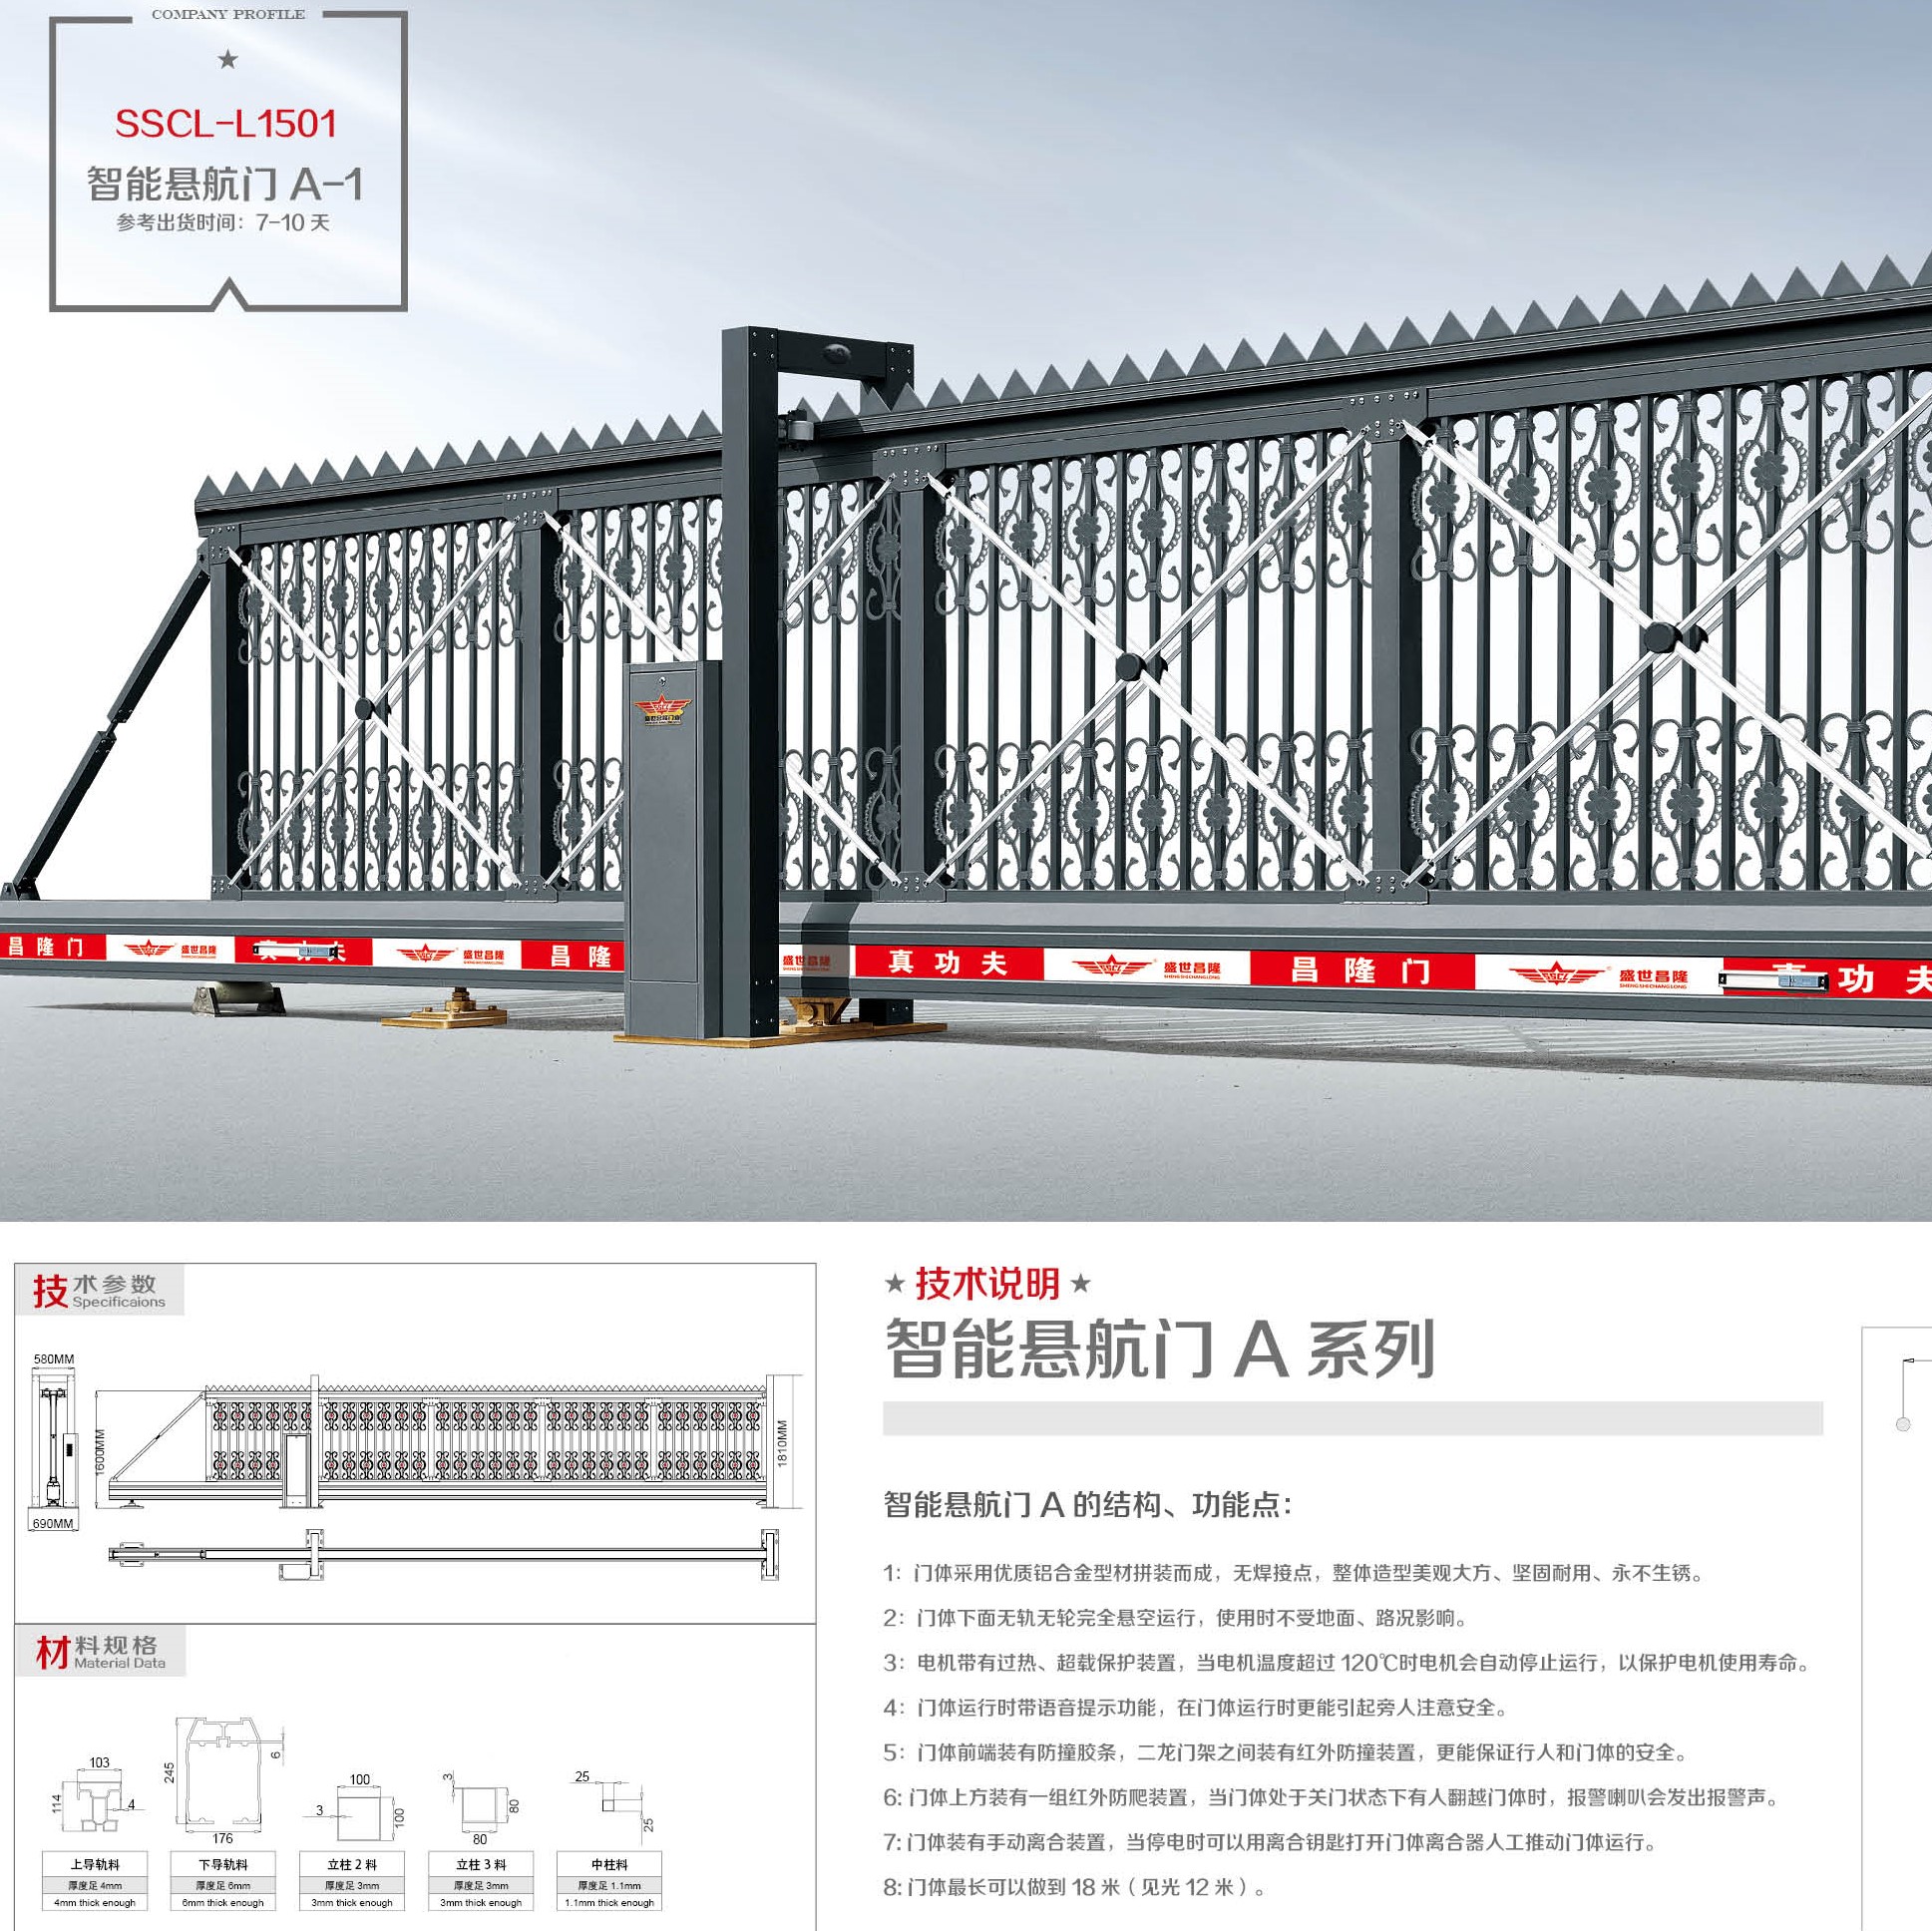 SSCL -L1501, Cổng xếp Trugn Quốc SSCL - J1522, cổng xếp Trung Quốc, cổng xếp nhập, cổng xếp tự động